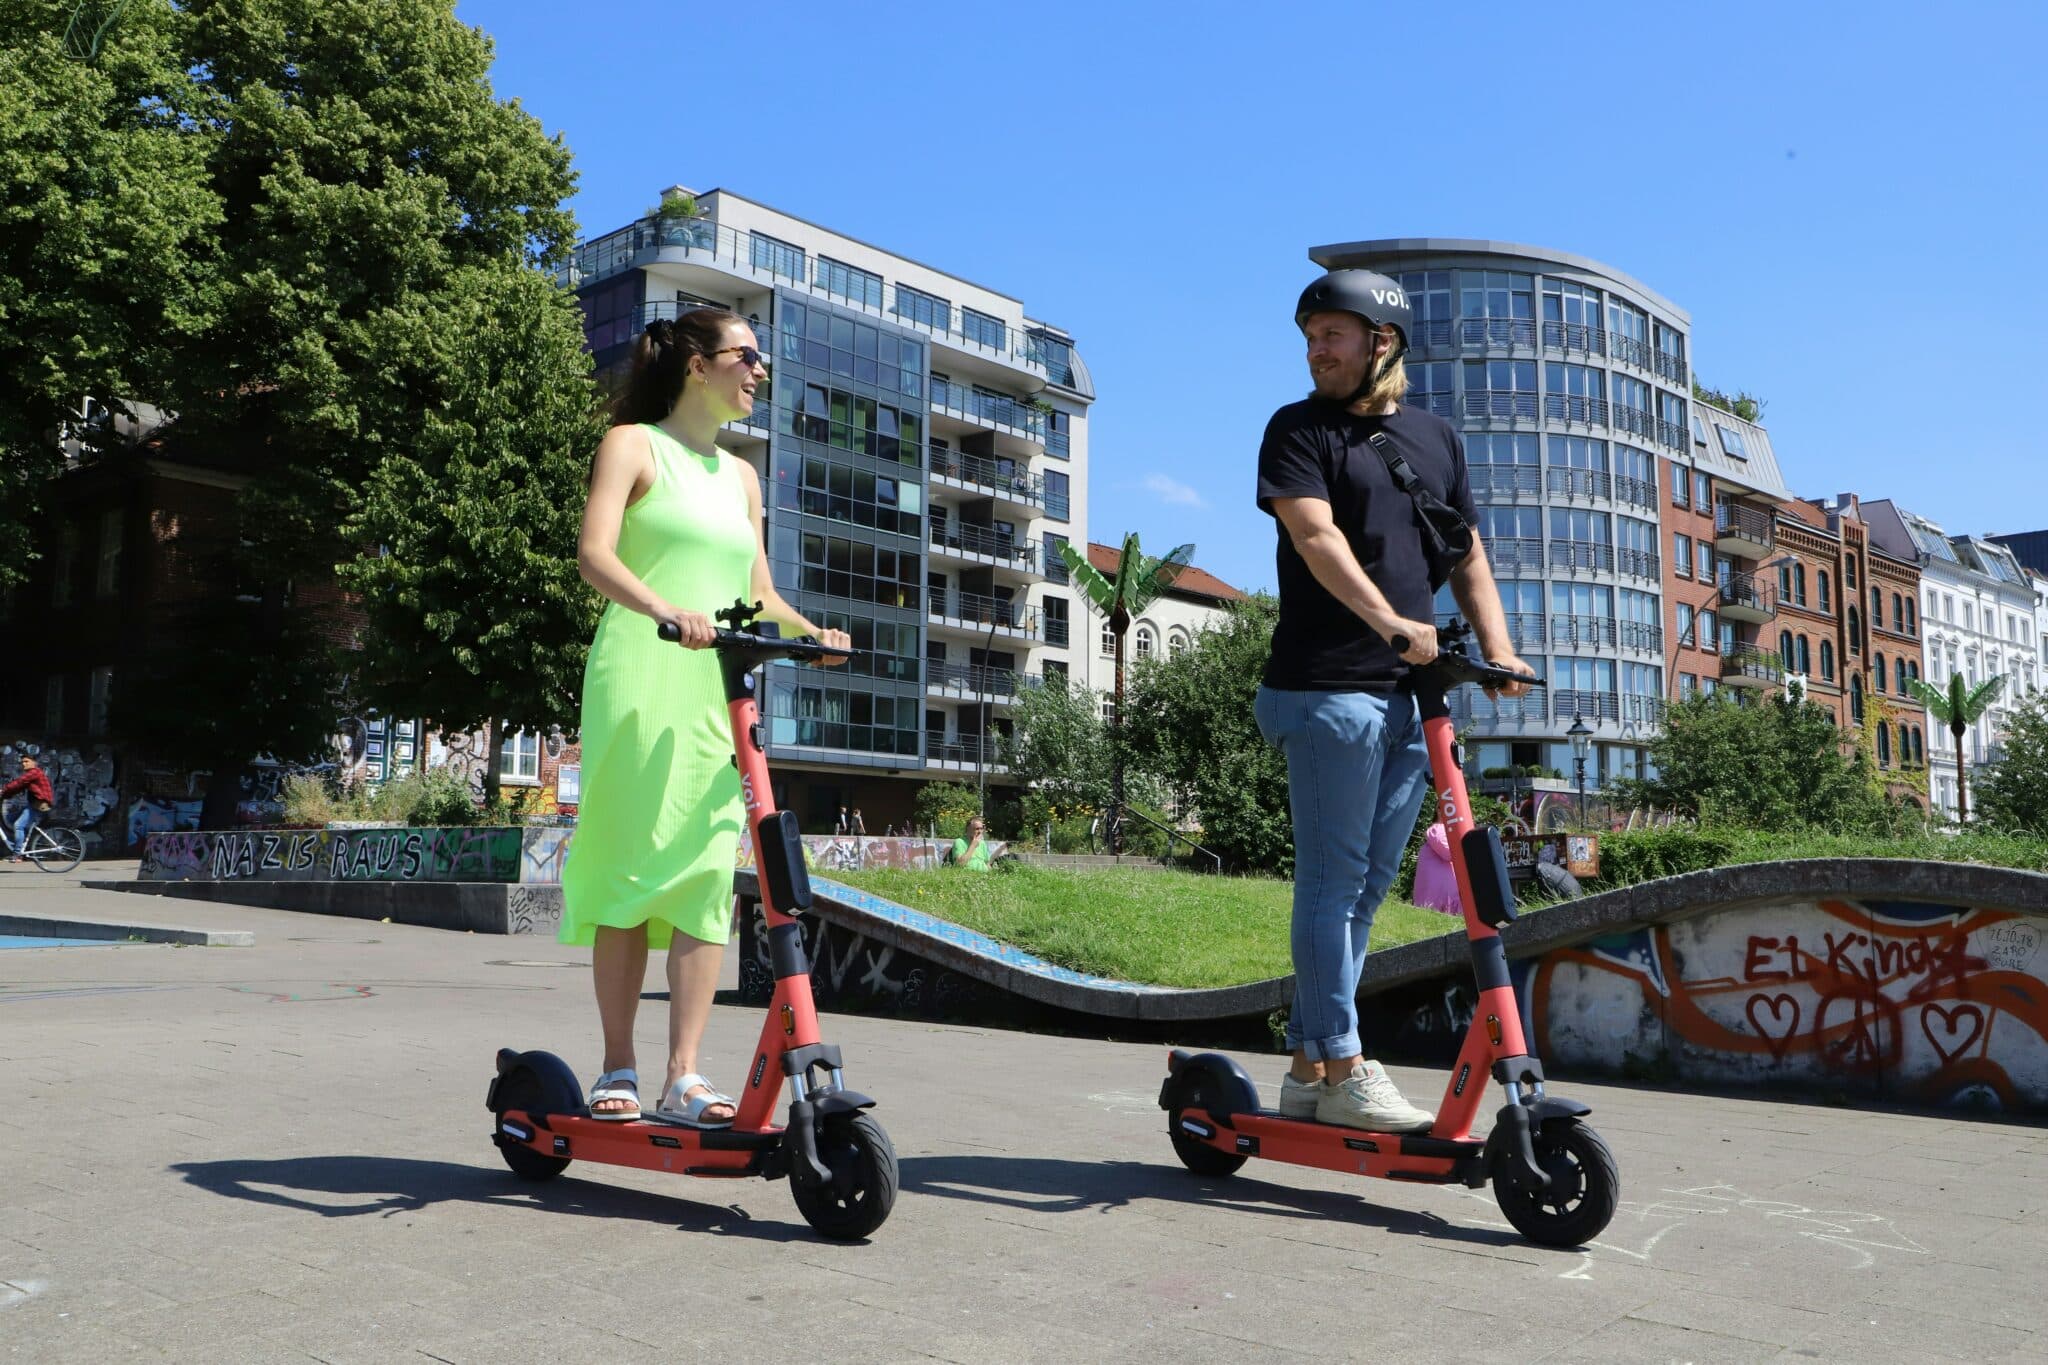 découvrez notre sélection de trottinettes électriques pour une mobilité urbaine pratique et écologique. trouvez le modèle parfait pour vos déplacements en ville.